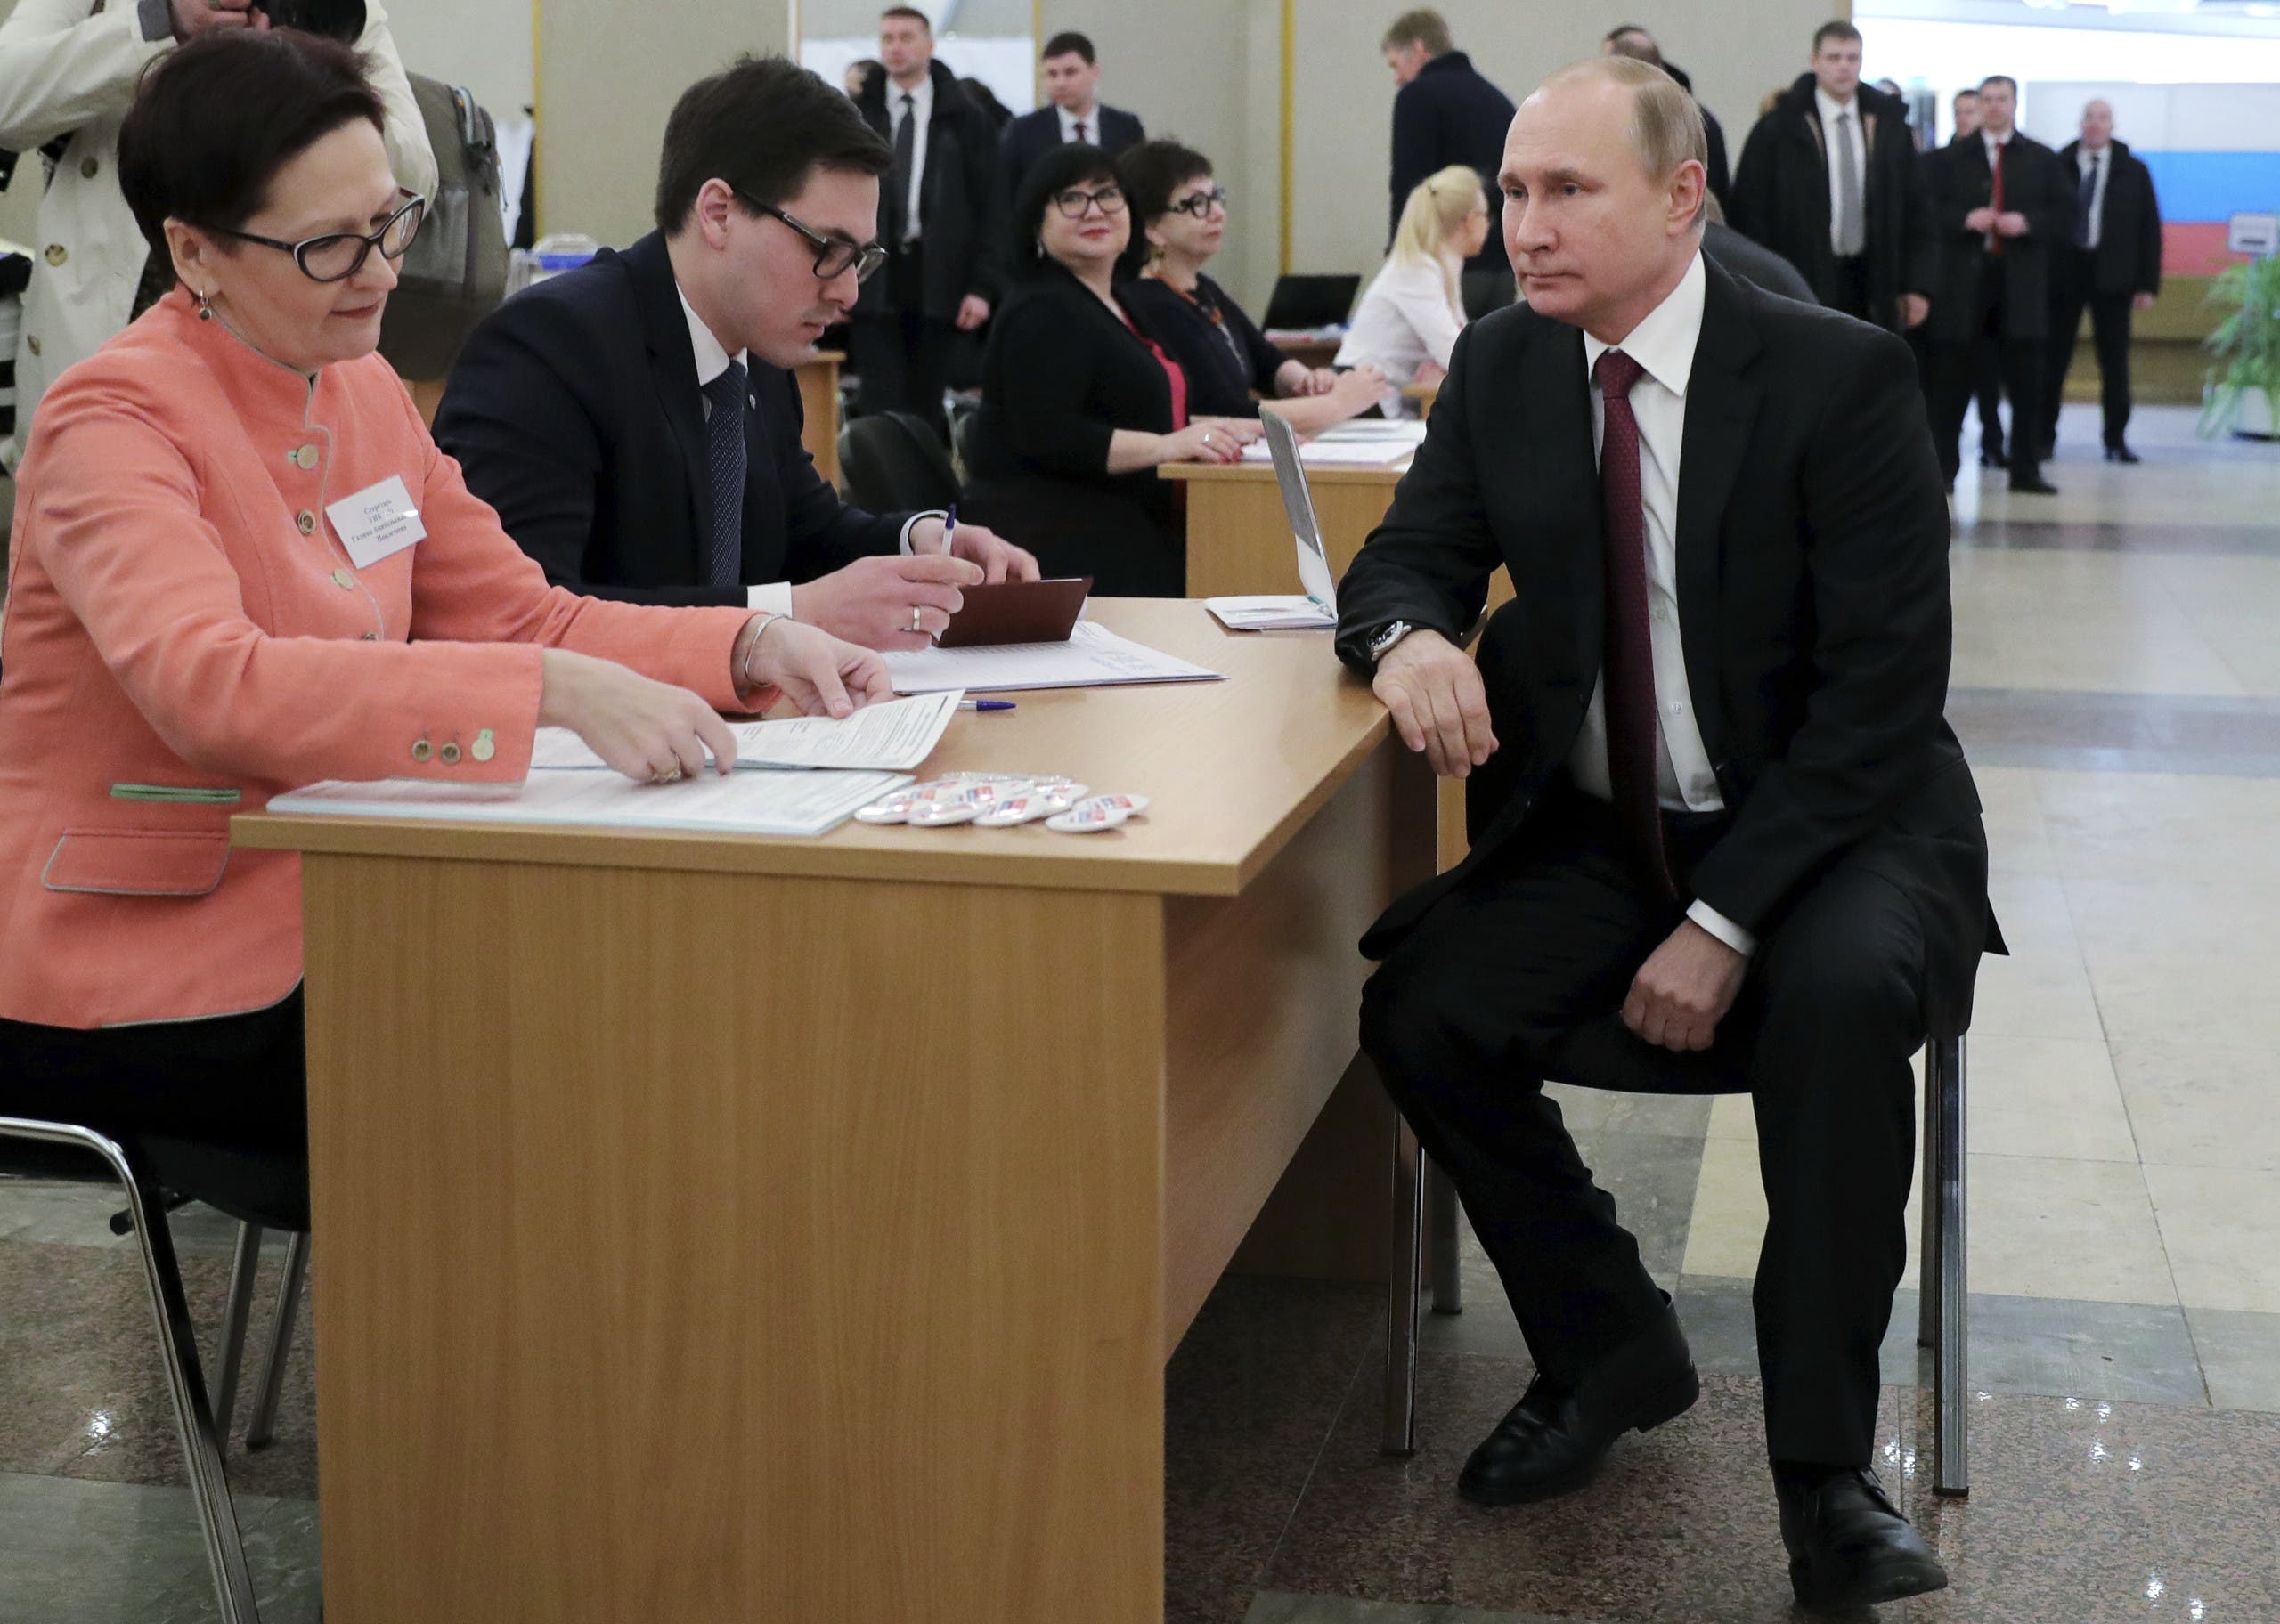 بوتين ينتظر دوره قبل التصويت في الانتخابتات الرئاسية الماضية في روسيا في 2018